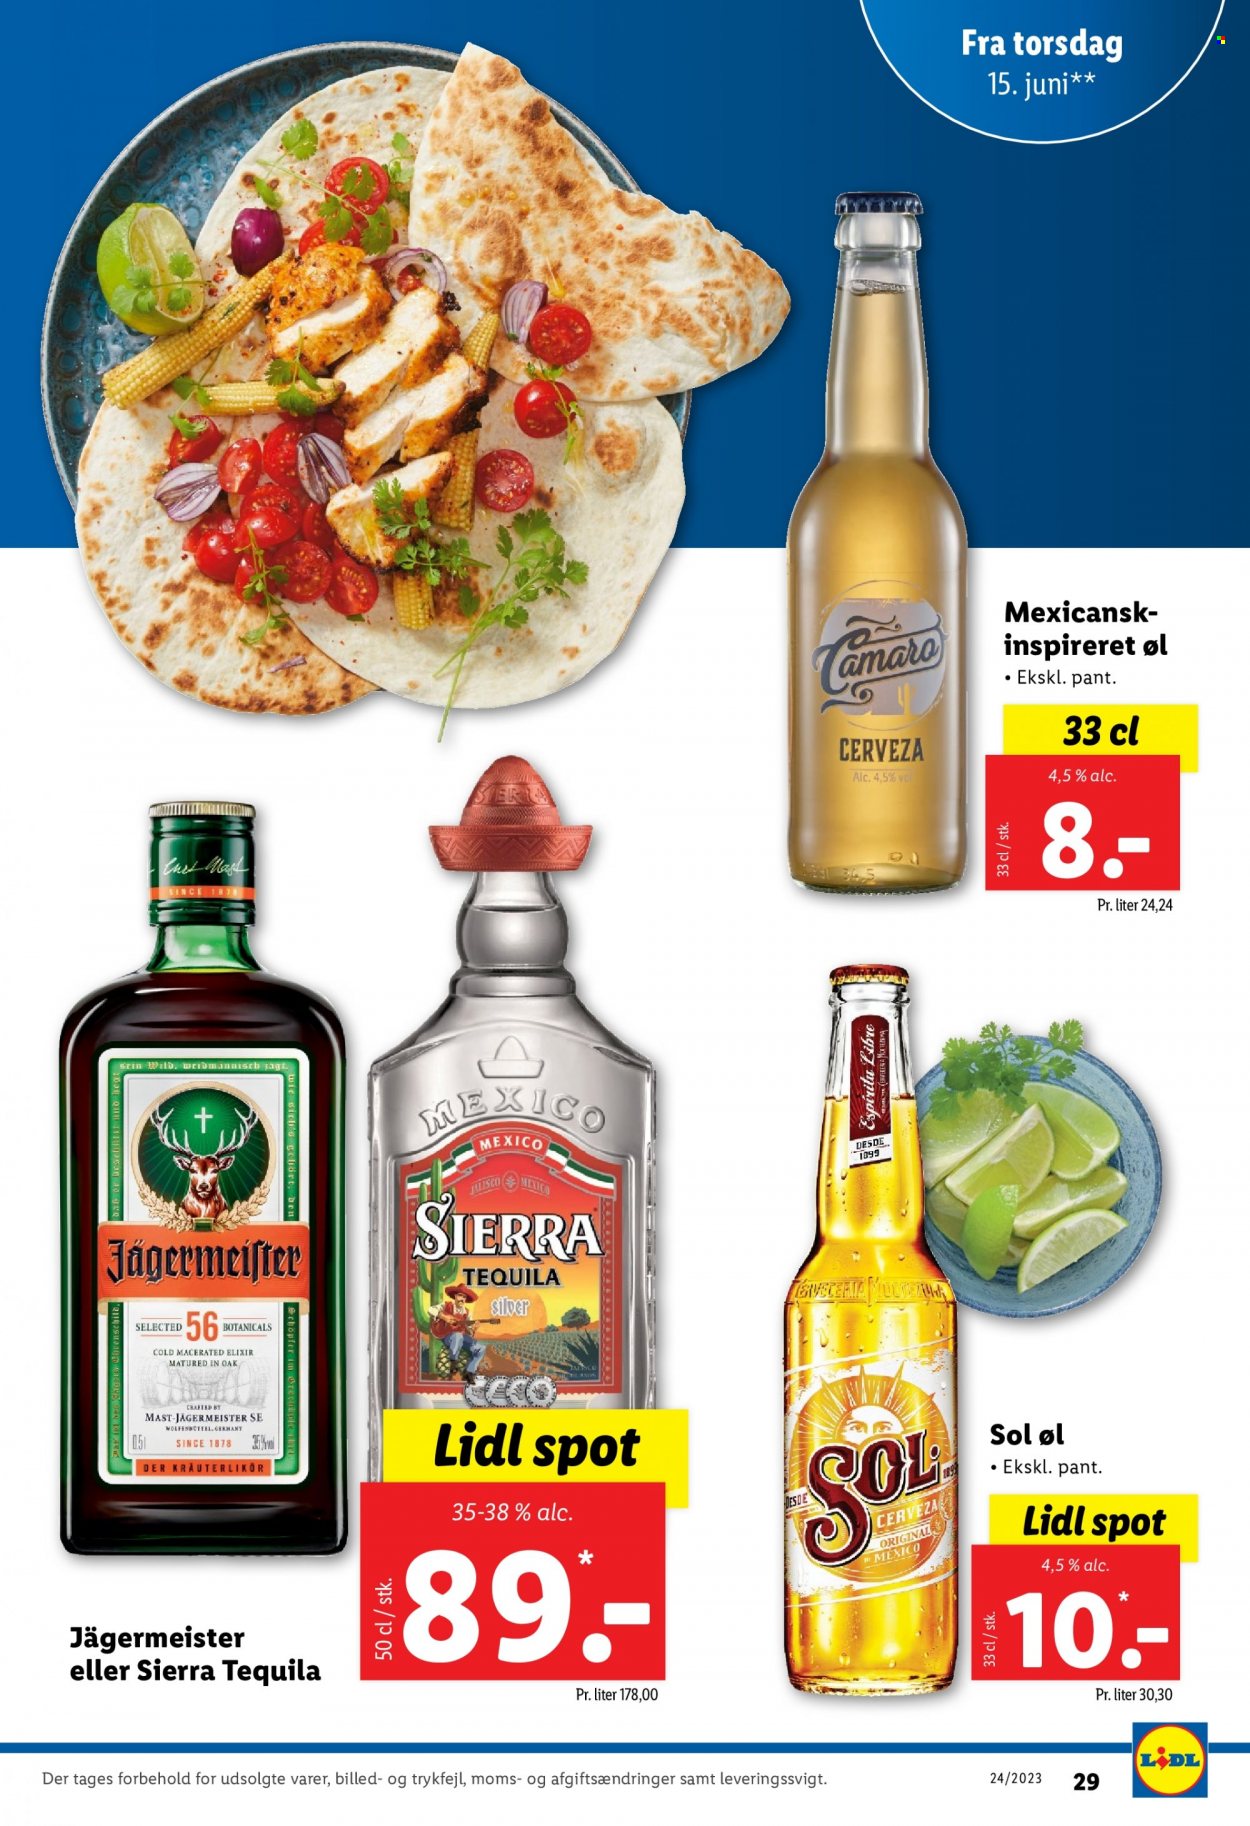 thumbnail - Lidl tilbud  - 11.6.2023 - 17.6.2023 - tilbudsprodukter - Jägermeister, tequila, øl. Side 29.